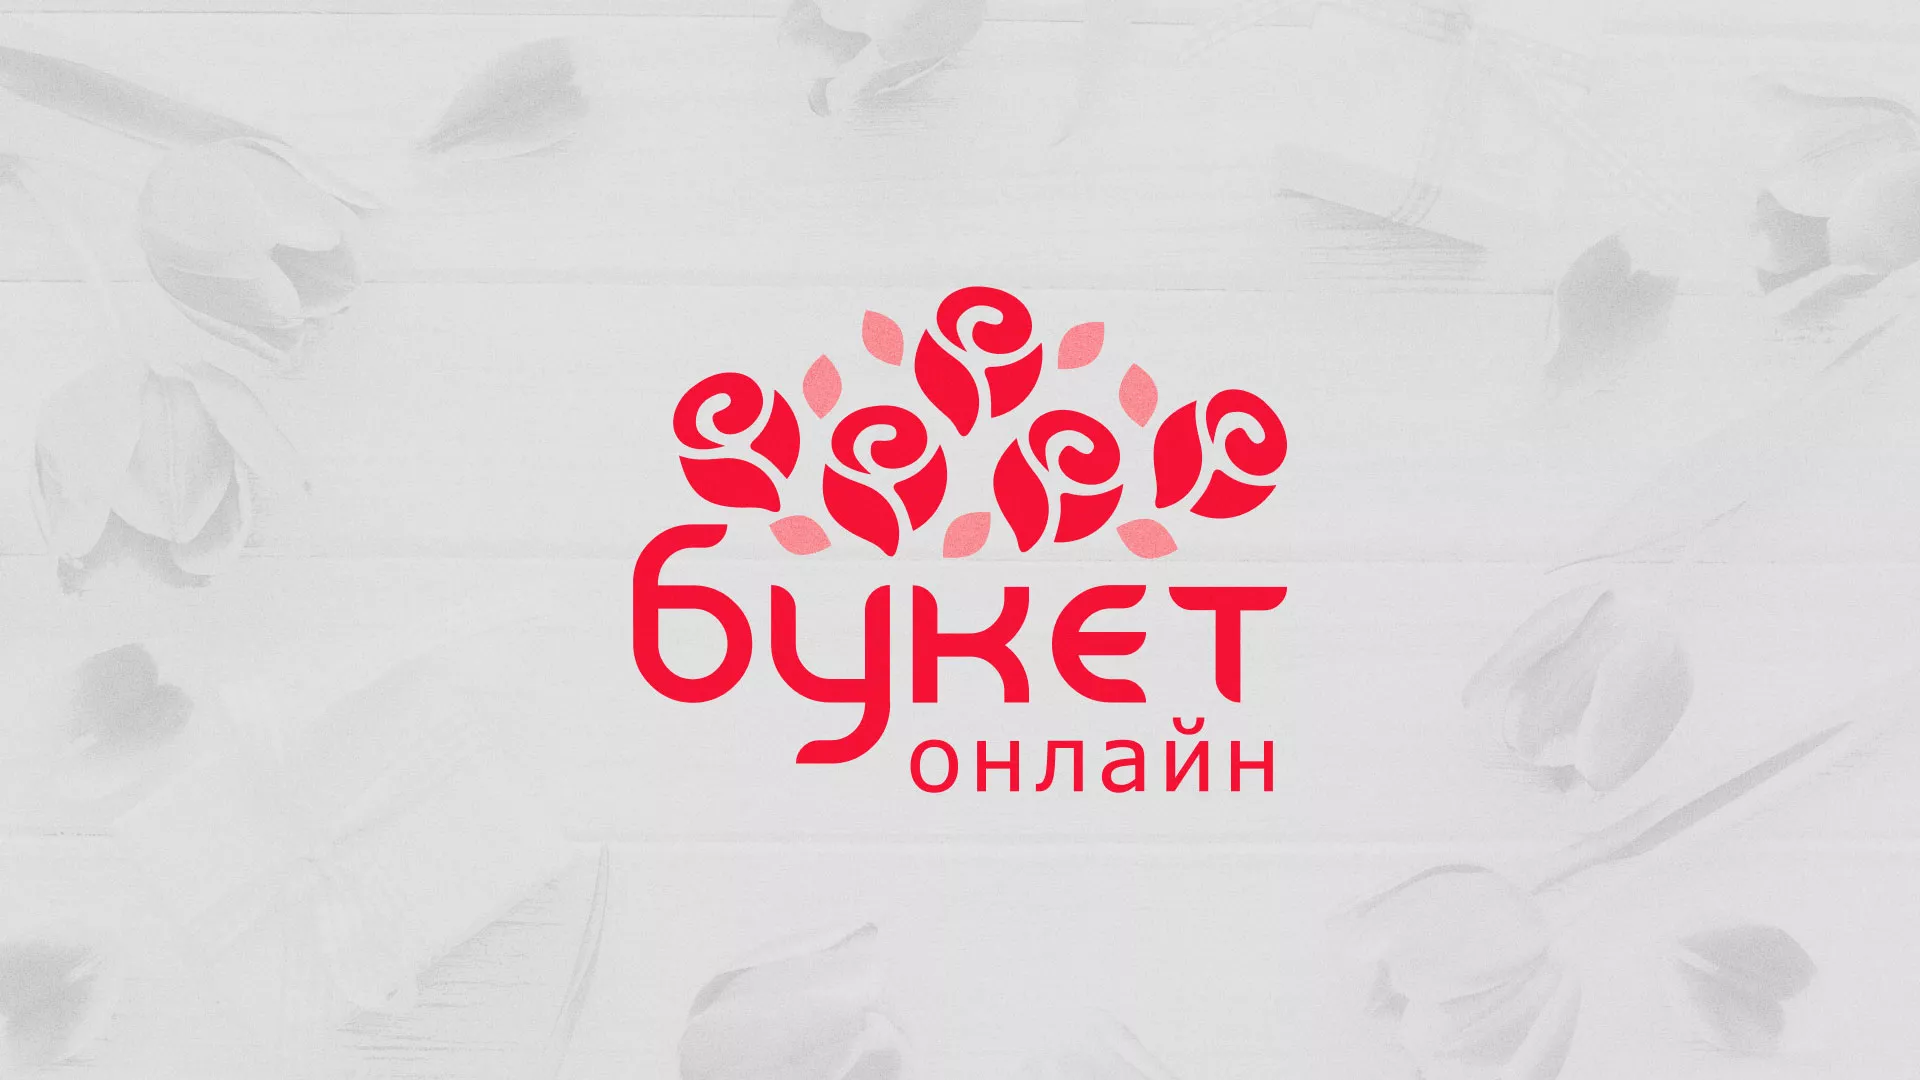 Создание интернет-магазина «Букет-онлайн» по цветам в Щелково